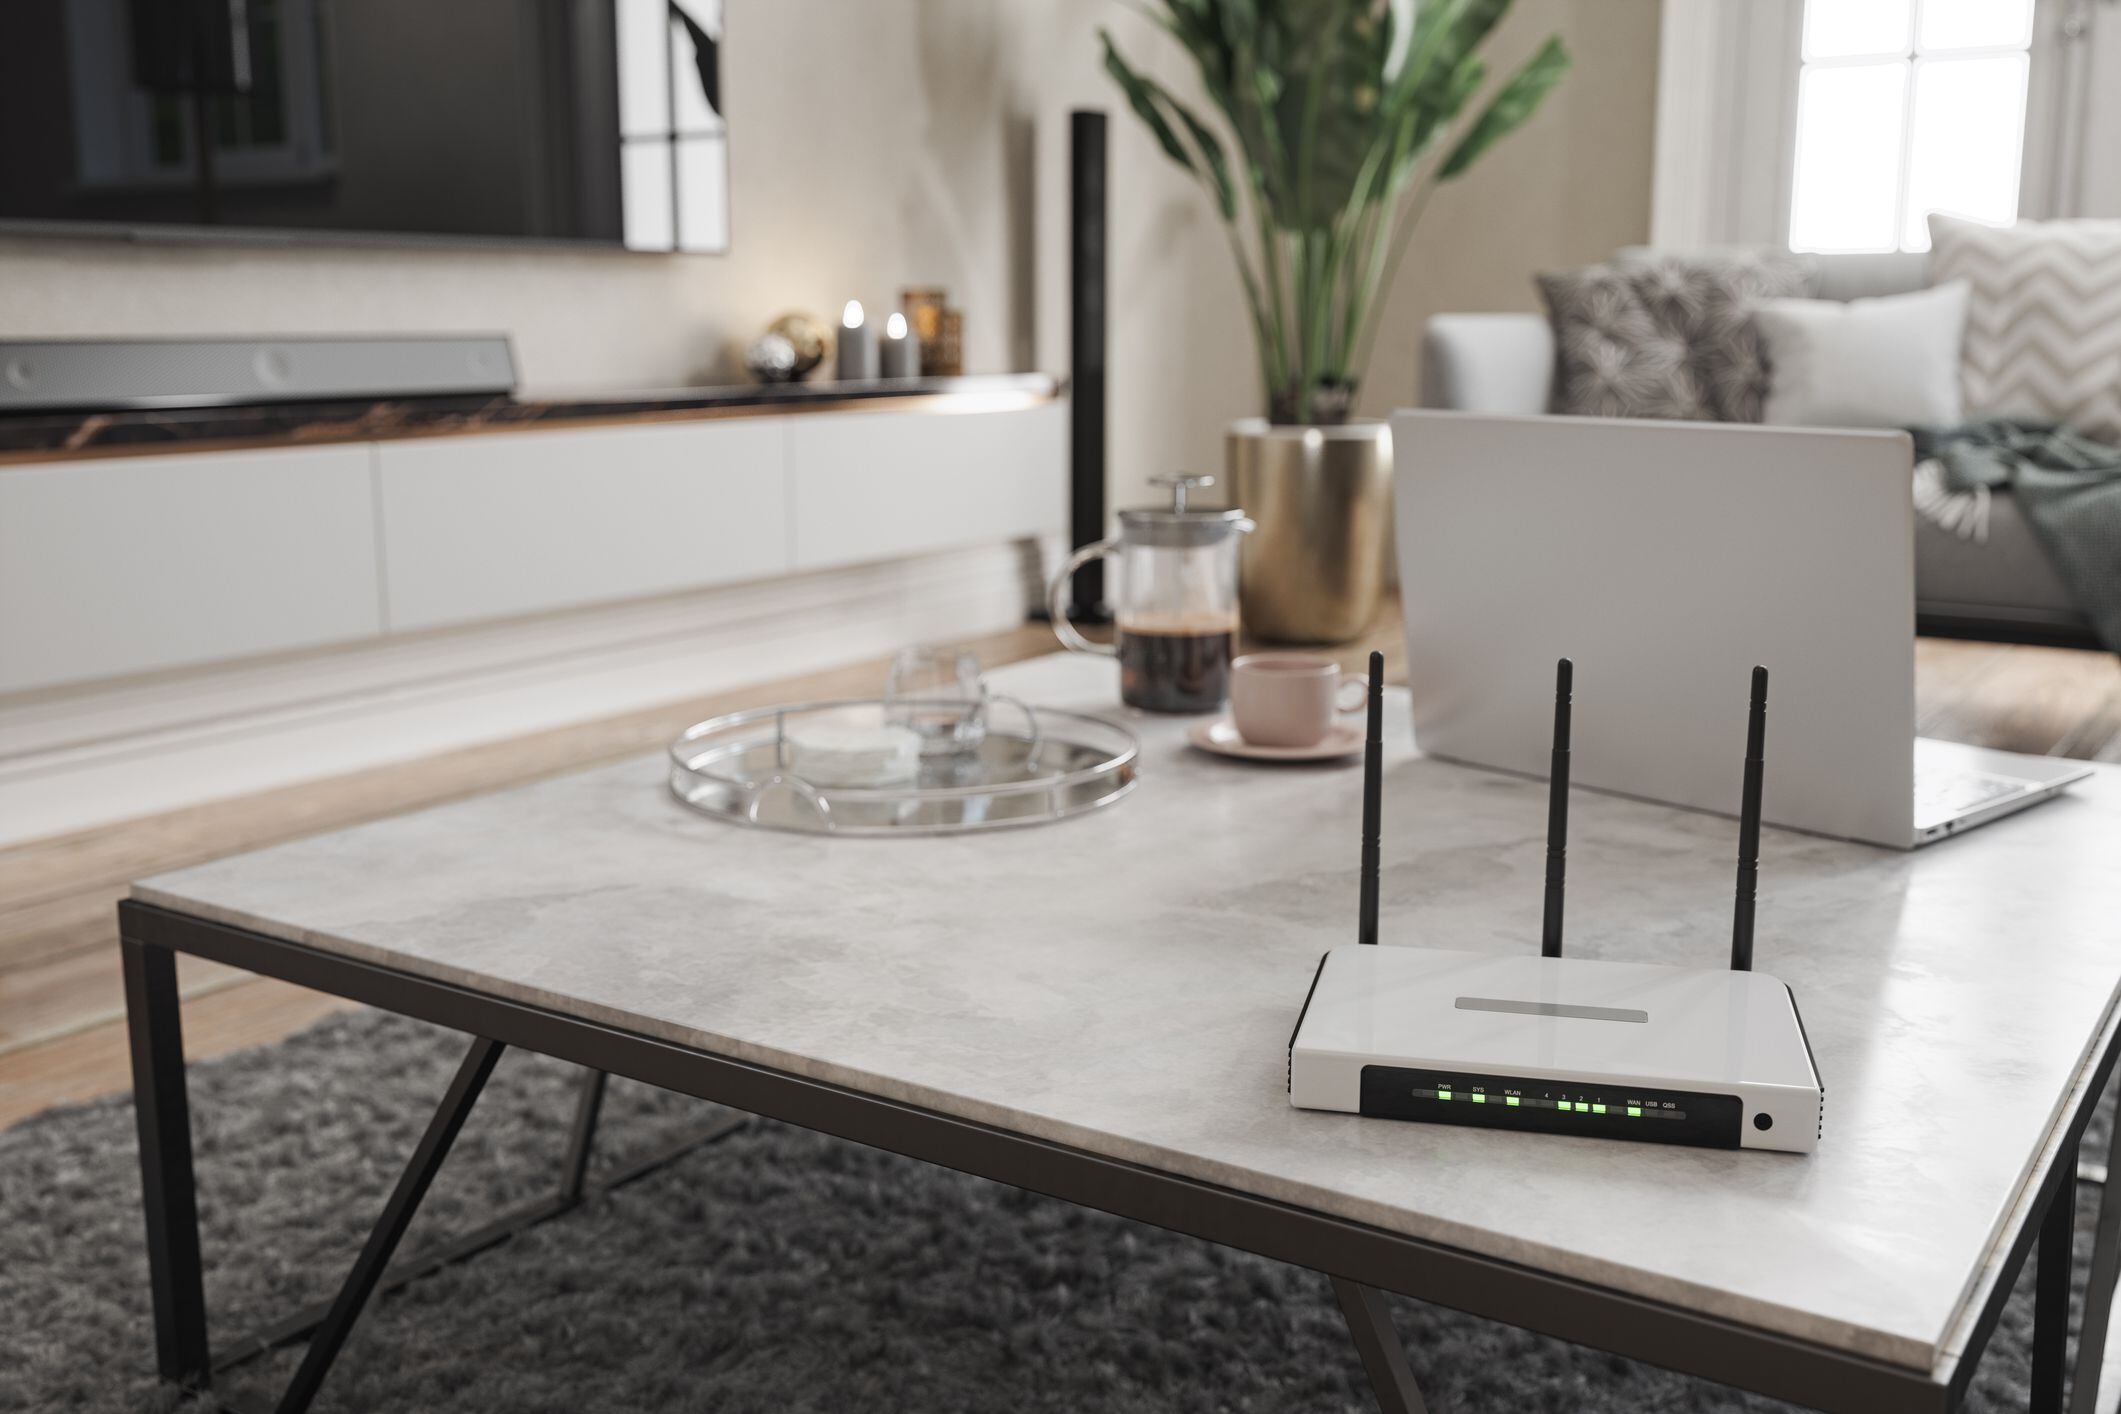 el lugar donde nunca debe colocar el router en su casa; podría afectar a varios electrodomésticos